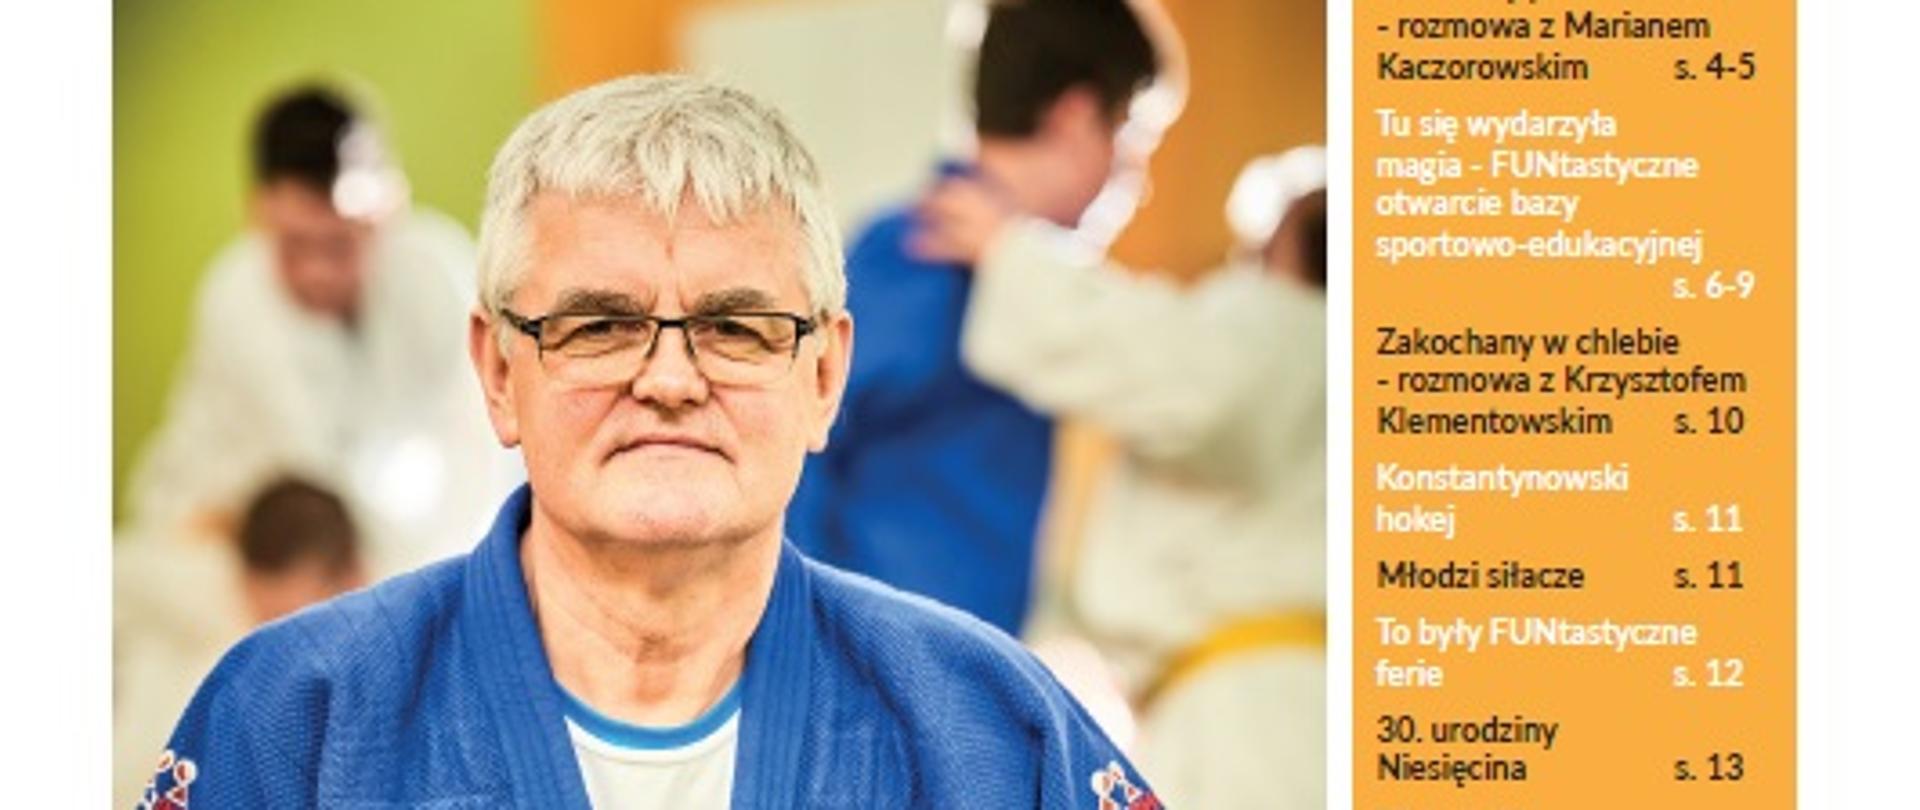 Okładka informatora konstantynow.pl. W centrum zdjęcie trenera judo w niebieskim stroju. W tle ćwiczące dzieci. Tytuł Marian Kaczorowski. Judo zrobiło dużo dobrego w moim życiu.